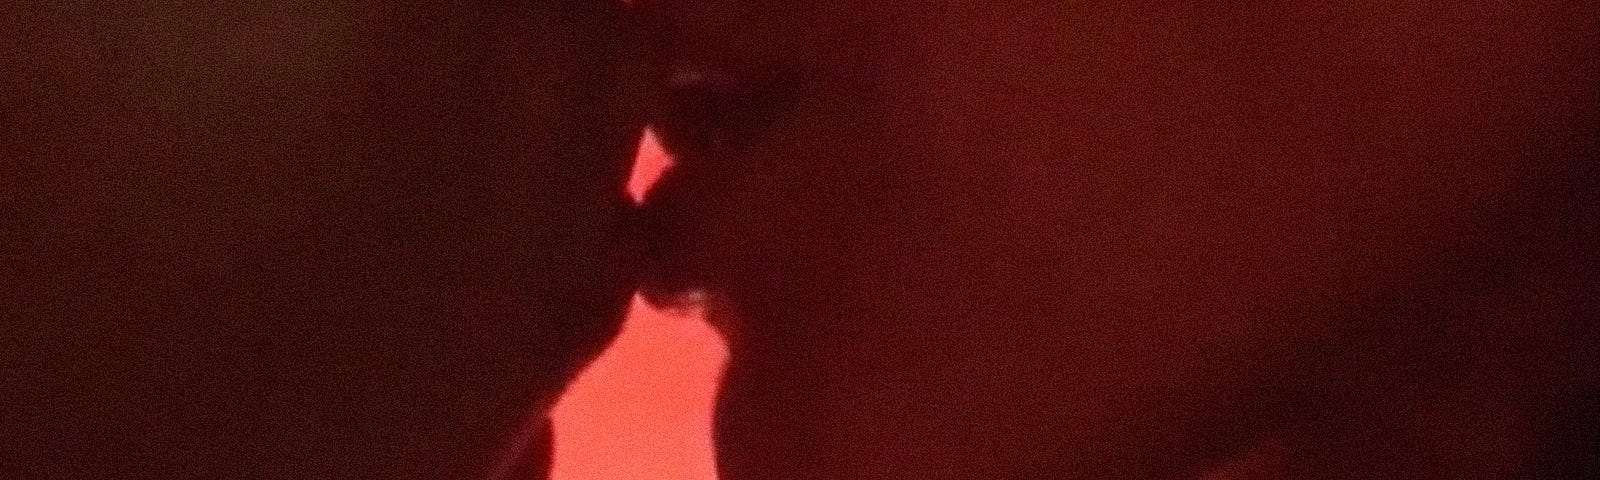 Dos personas se acercan para besarse en primer plano, sus labios se rozan; las siluetas dejan ver luz roja al fondo.